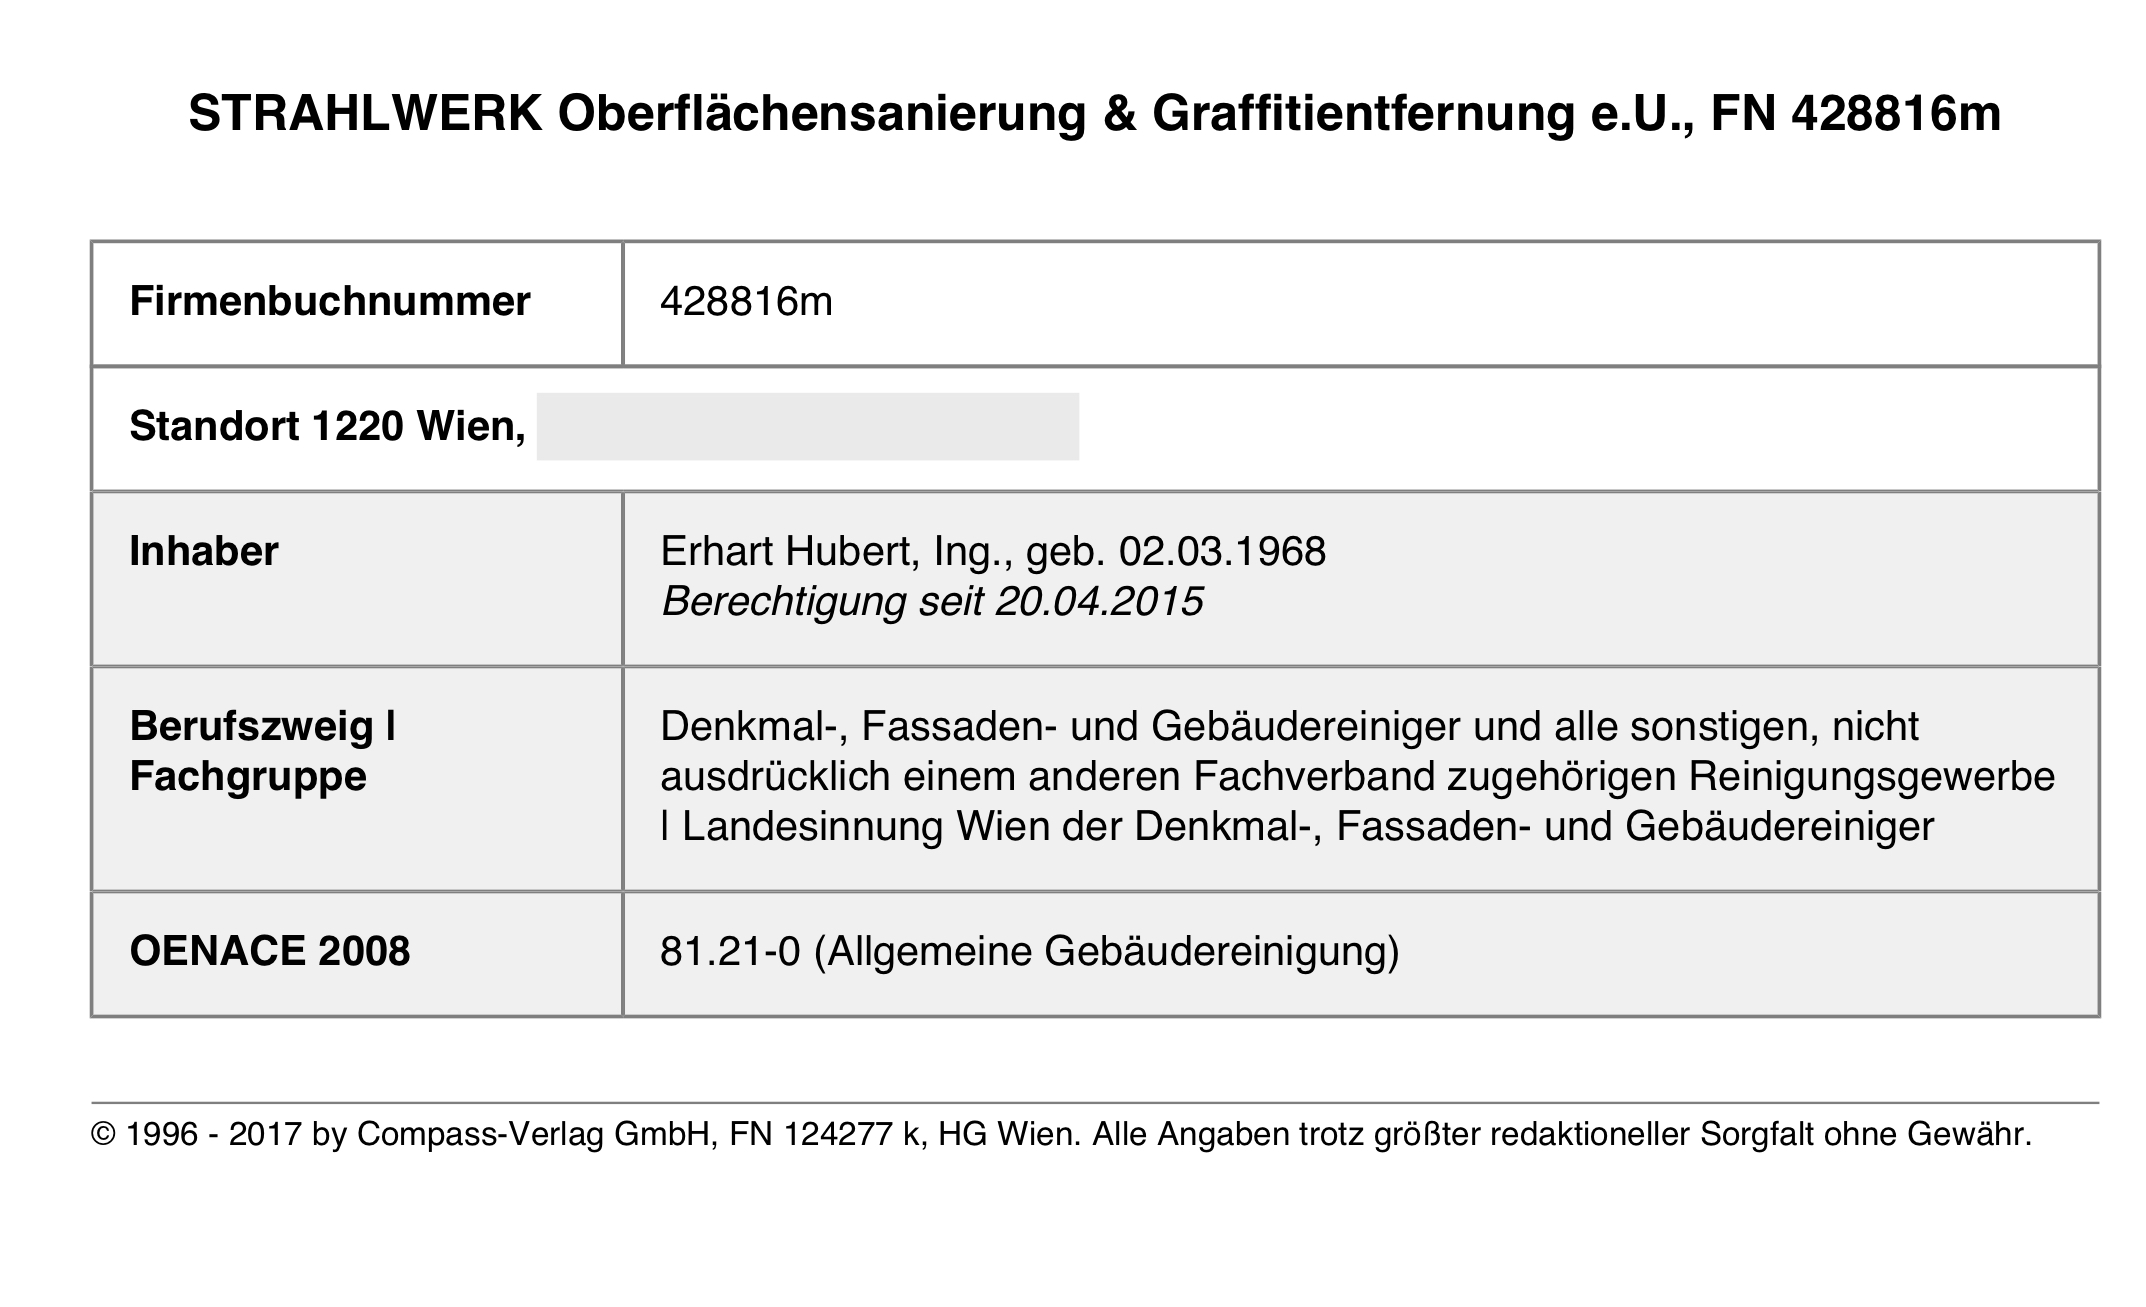 STRAHLWERK Oberflächensanierung & Graffitientfernung e.U.: Eigentümer Hubert Erhart